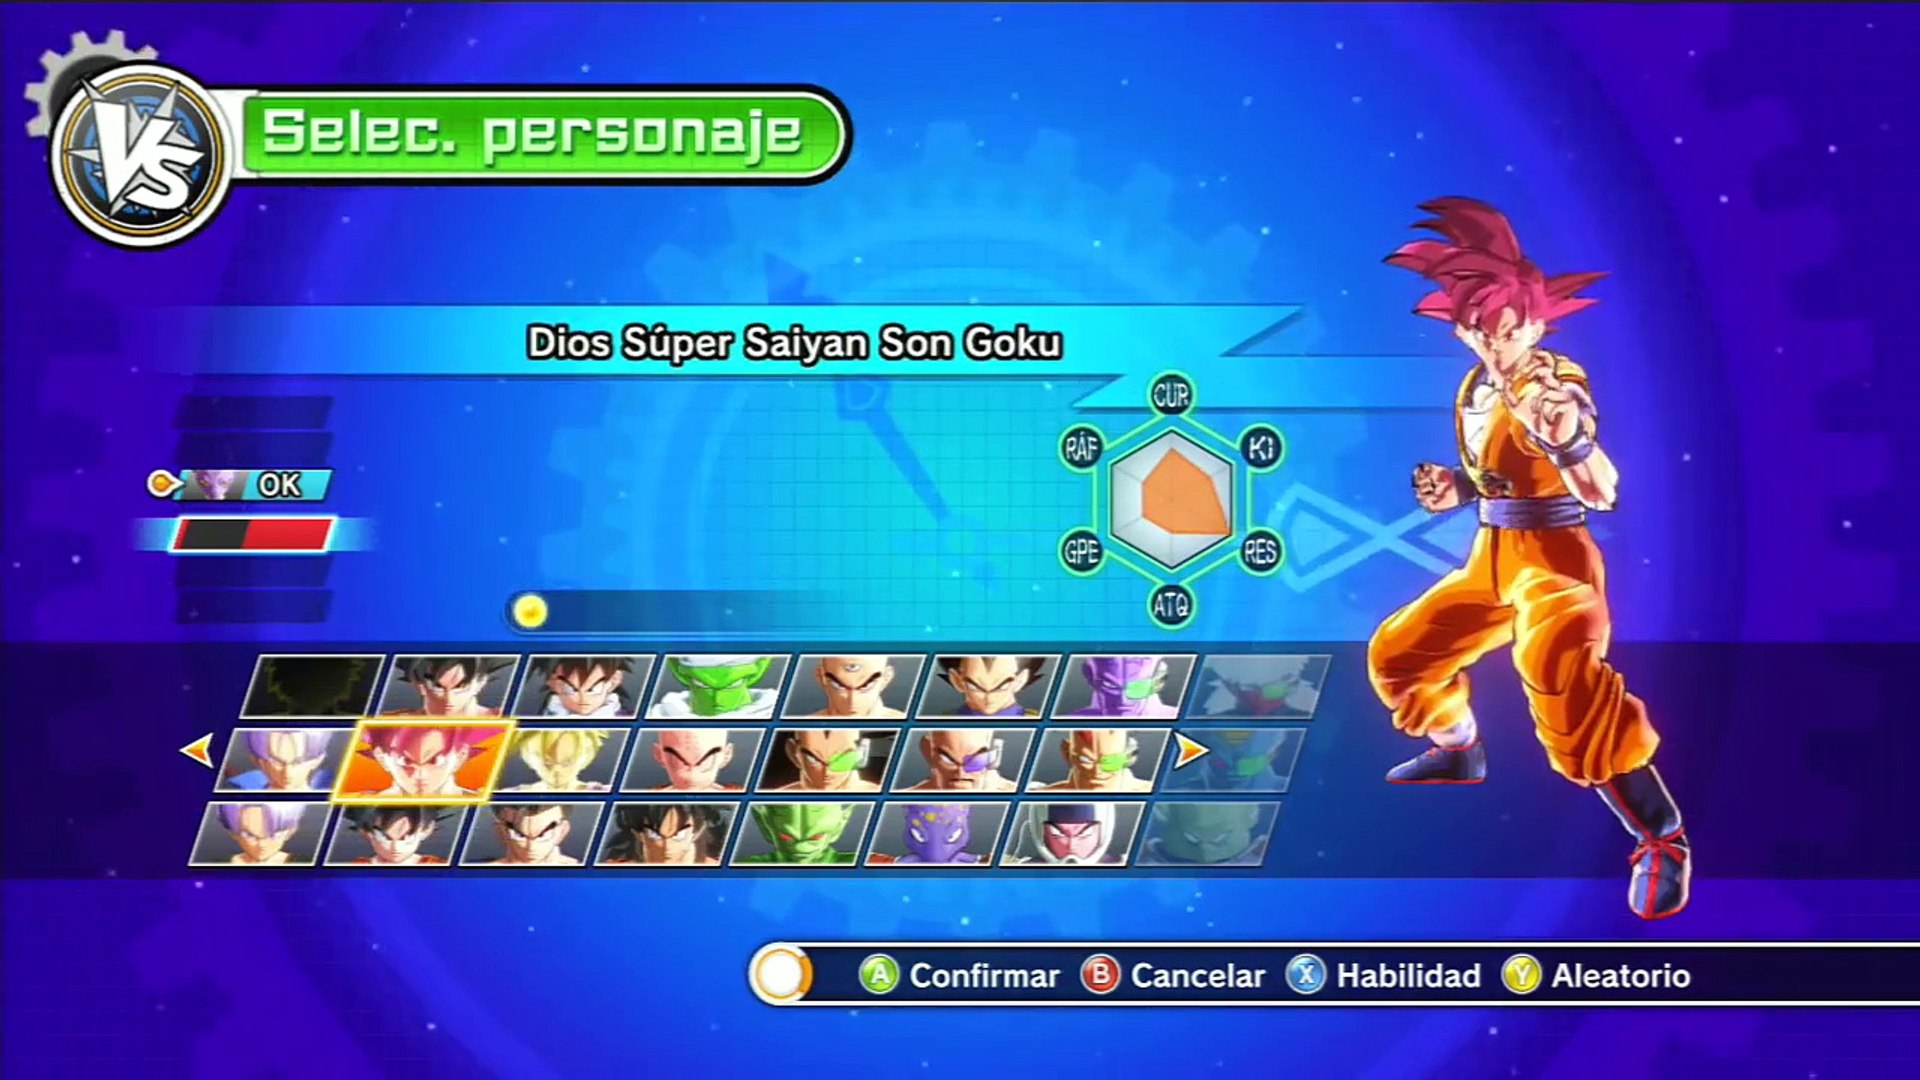 Dragon Ball Xenoverse : Goku Ssj God VS Bills - EPICIDAD EXTREMA Reviviendo  Batalla De Los Dioses - Dailymotion Video